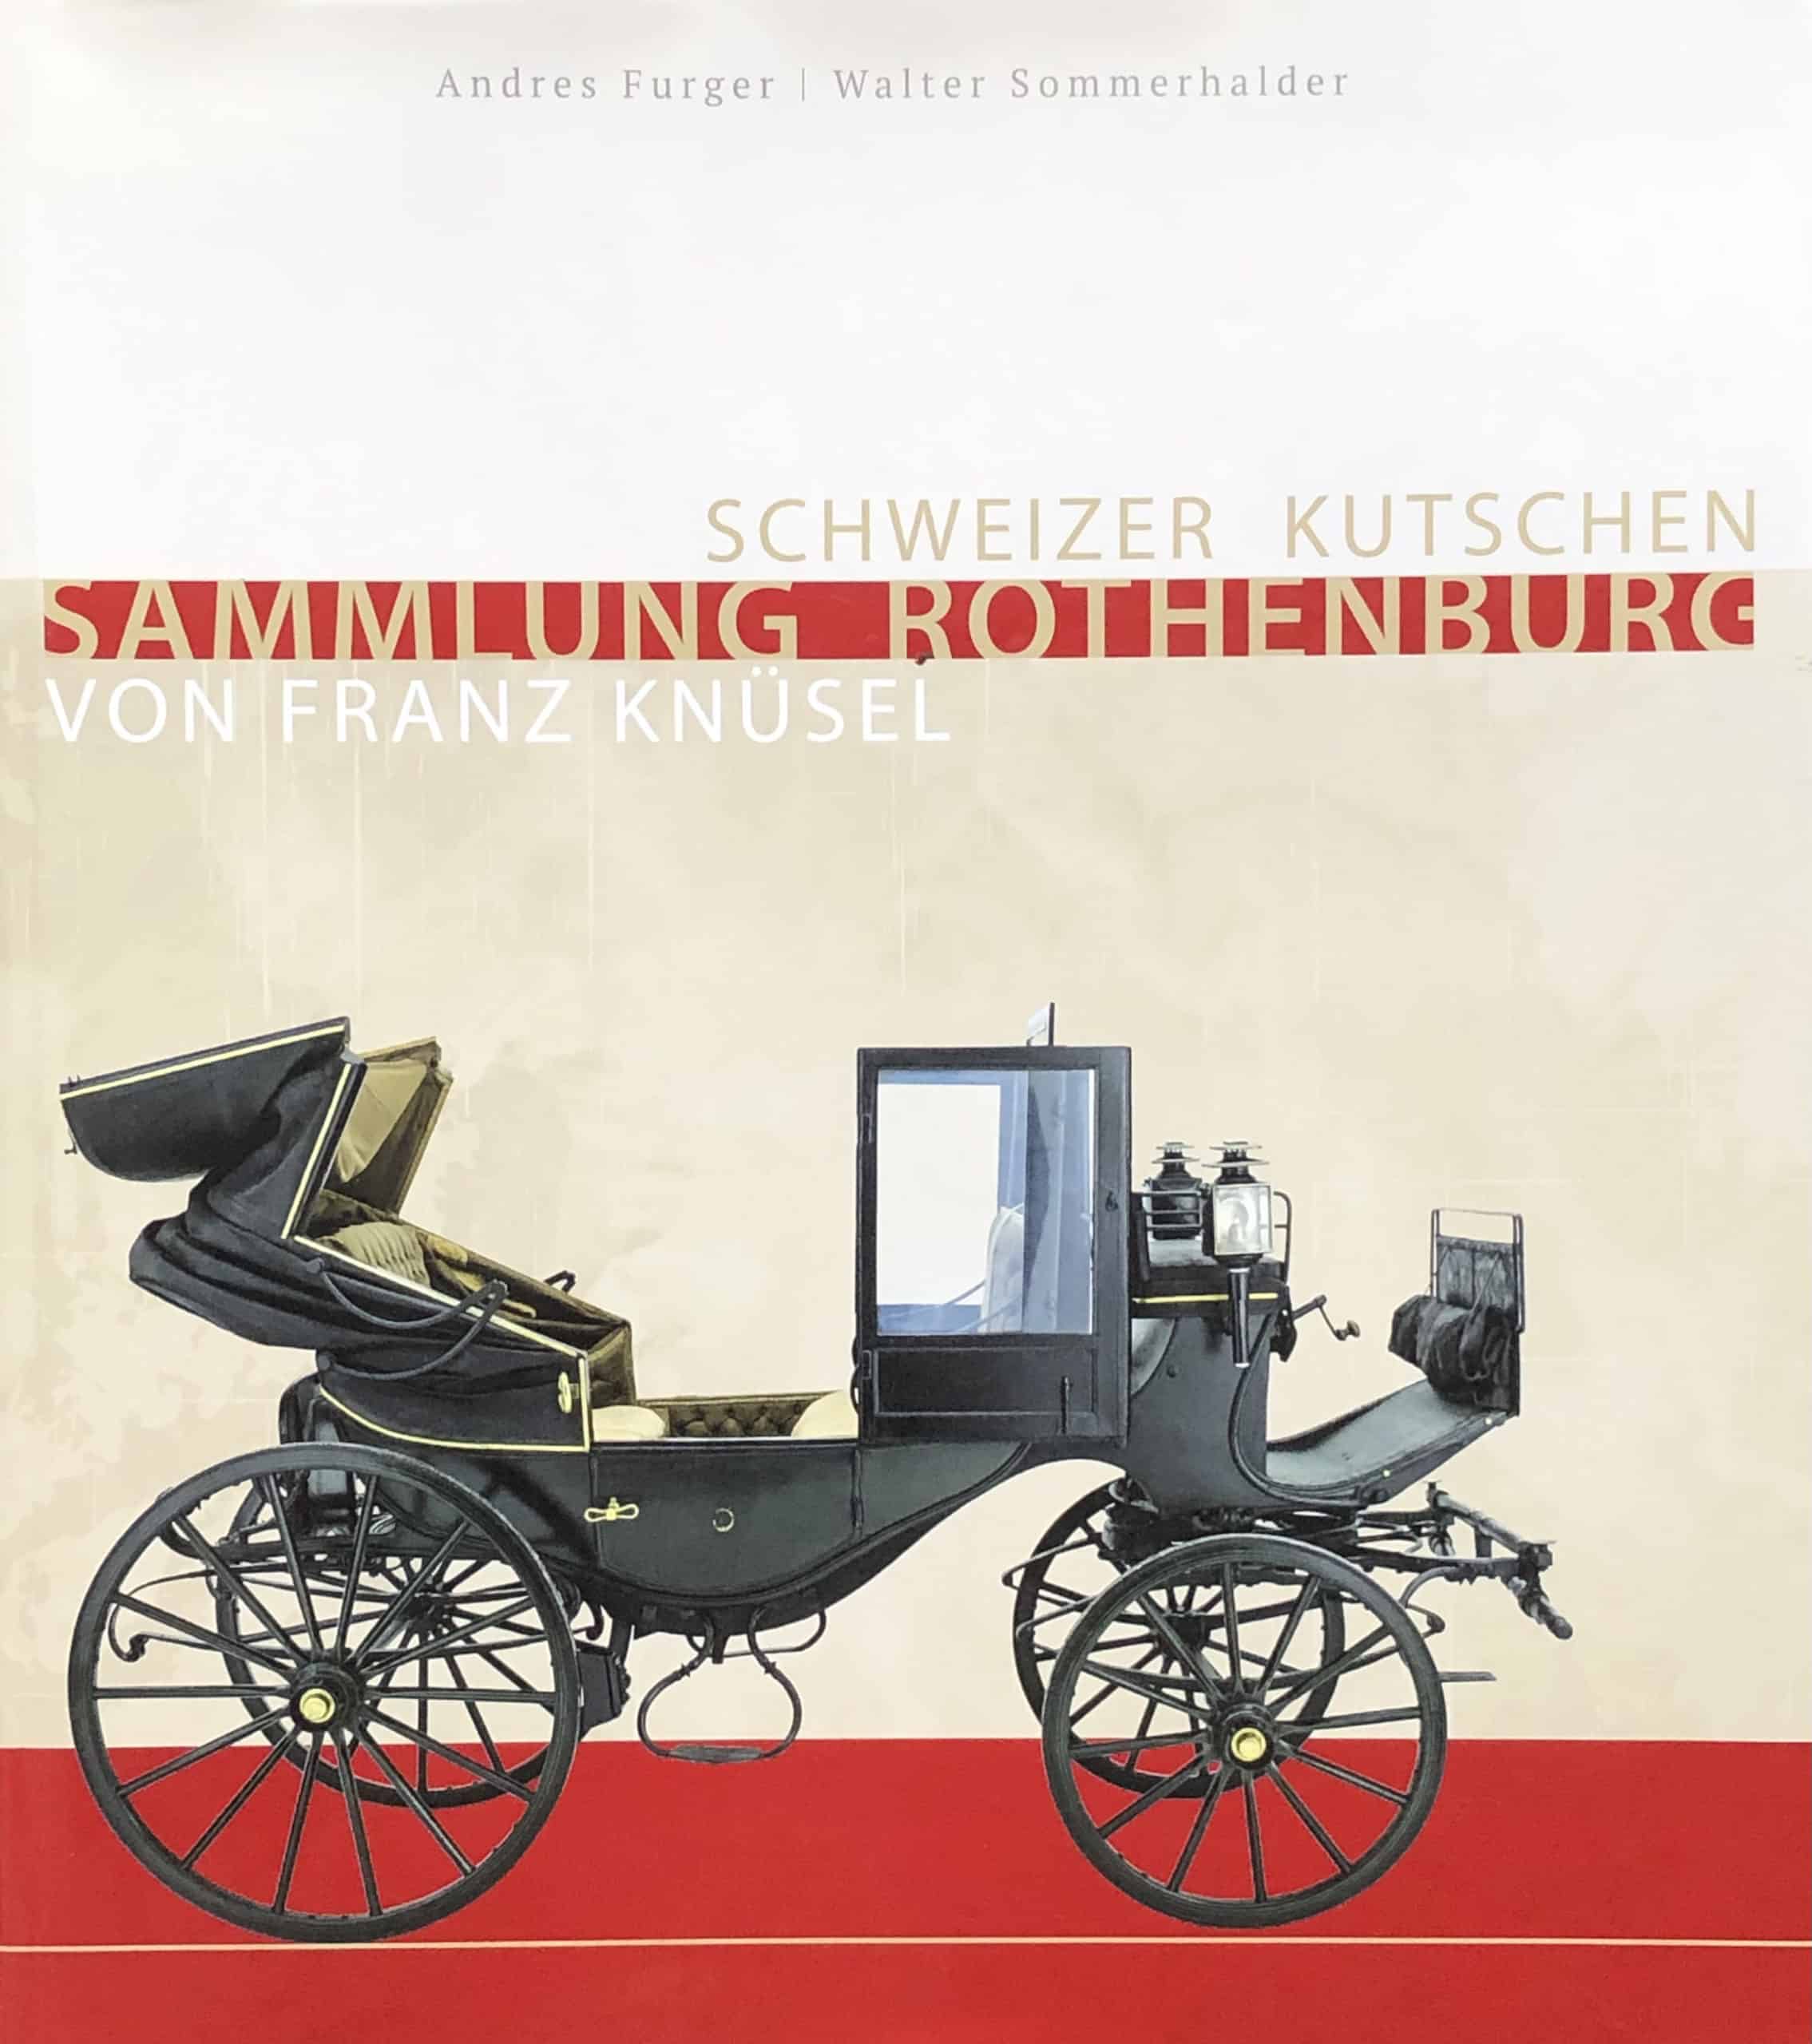 C9c Cover - Schweizer Kutschen-Sammlung Rothenburg Knüsel